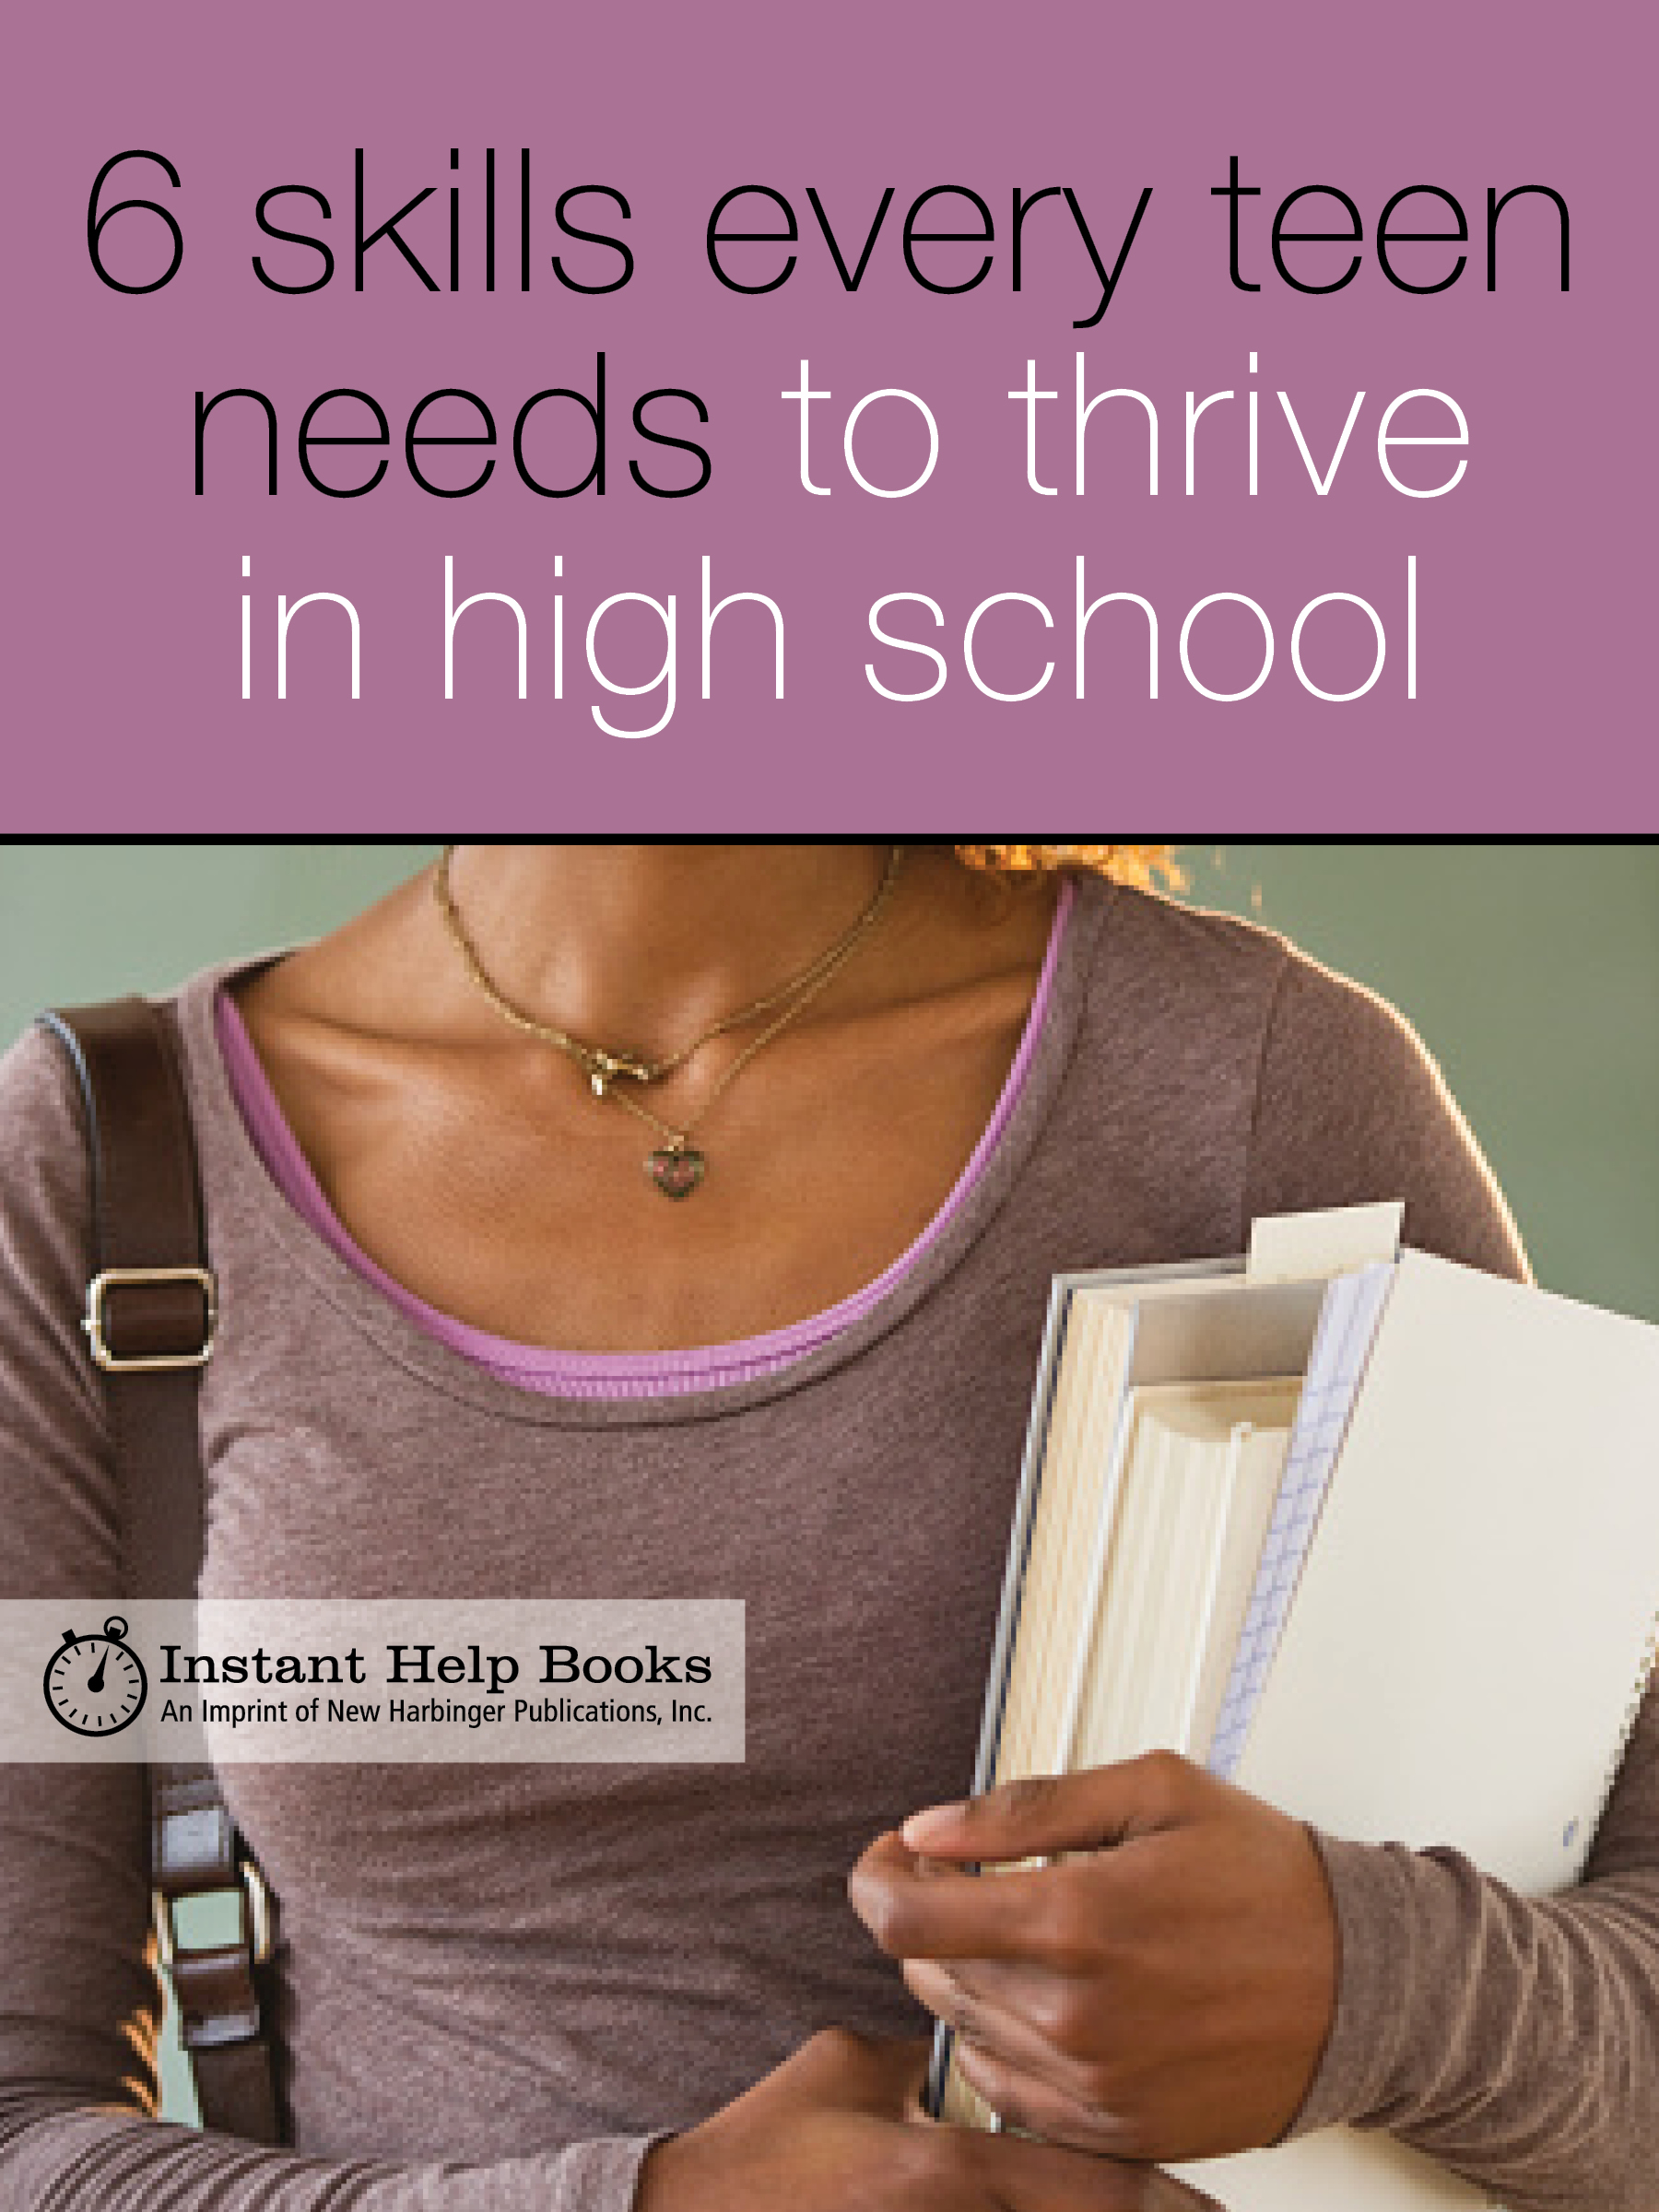 Teen girl holding school books